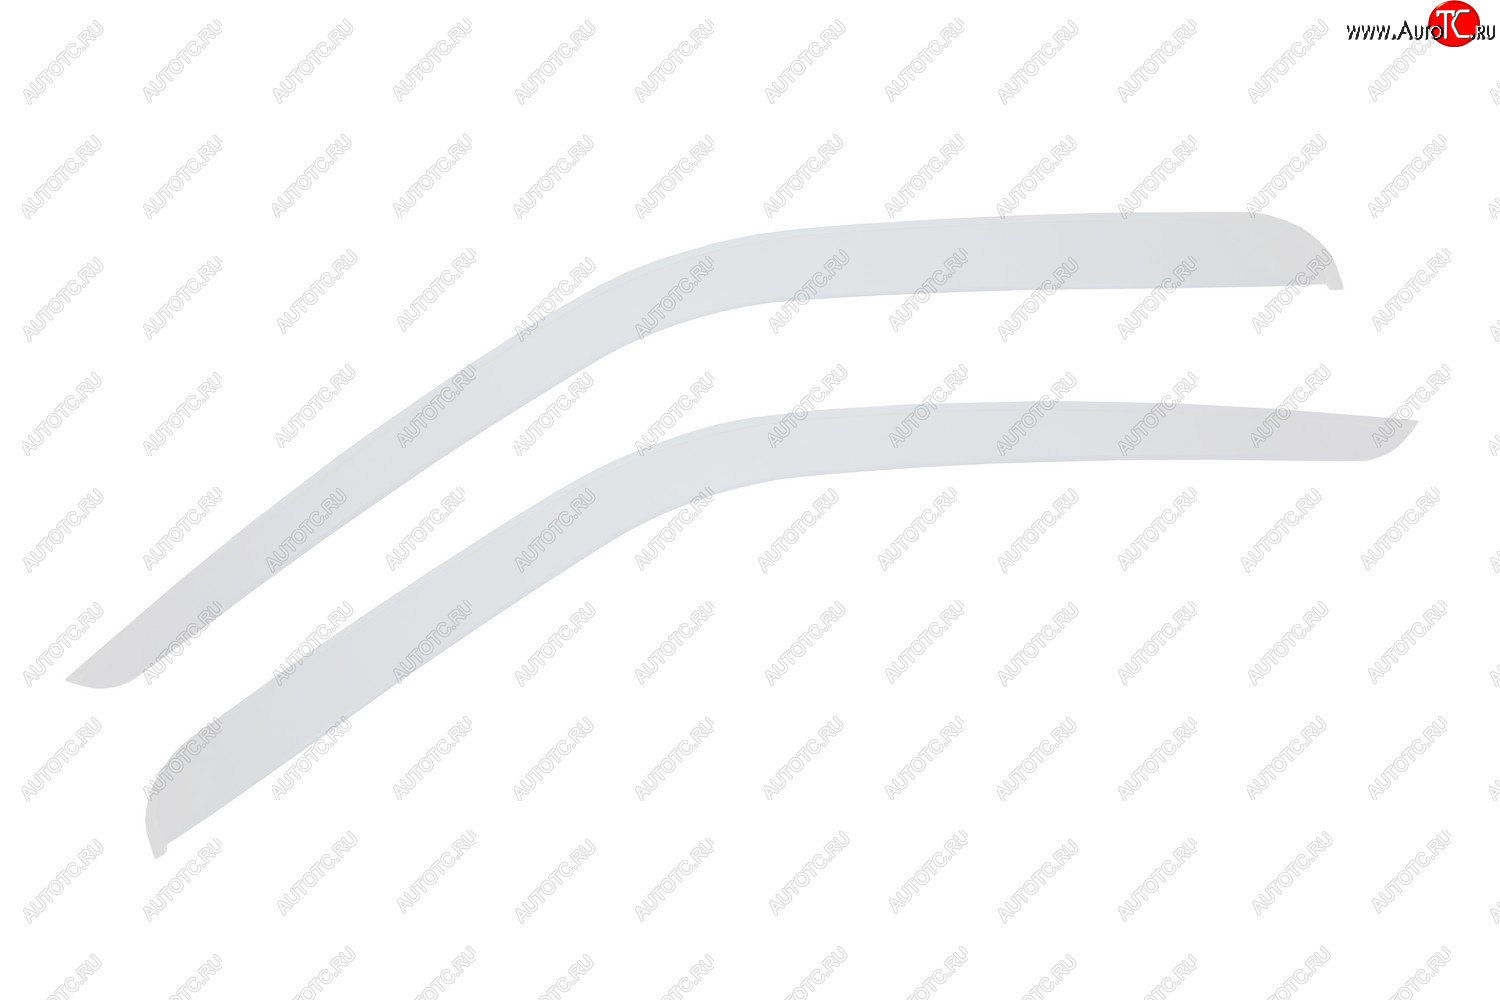 419 р. Дефлекторы окон (накладные, белые) REIN ГАЗ ГАЗель 3302 дорестайлинг шасси (1994-2002)  с доставкой в г. Калуга